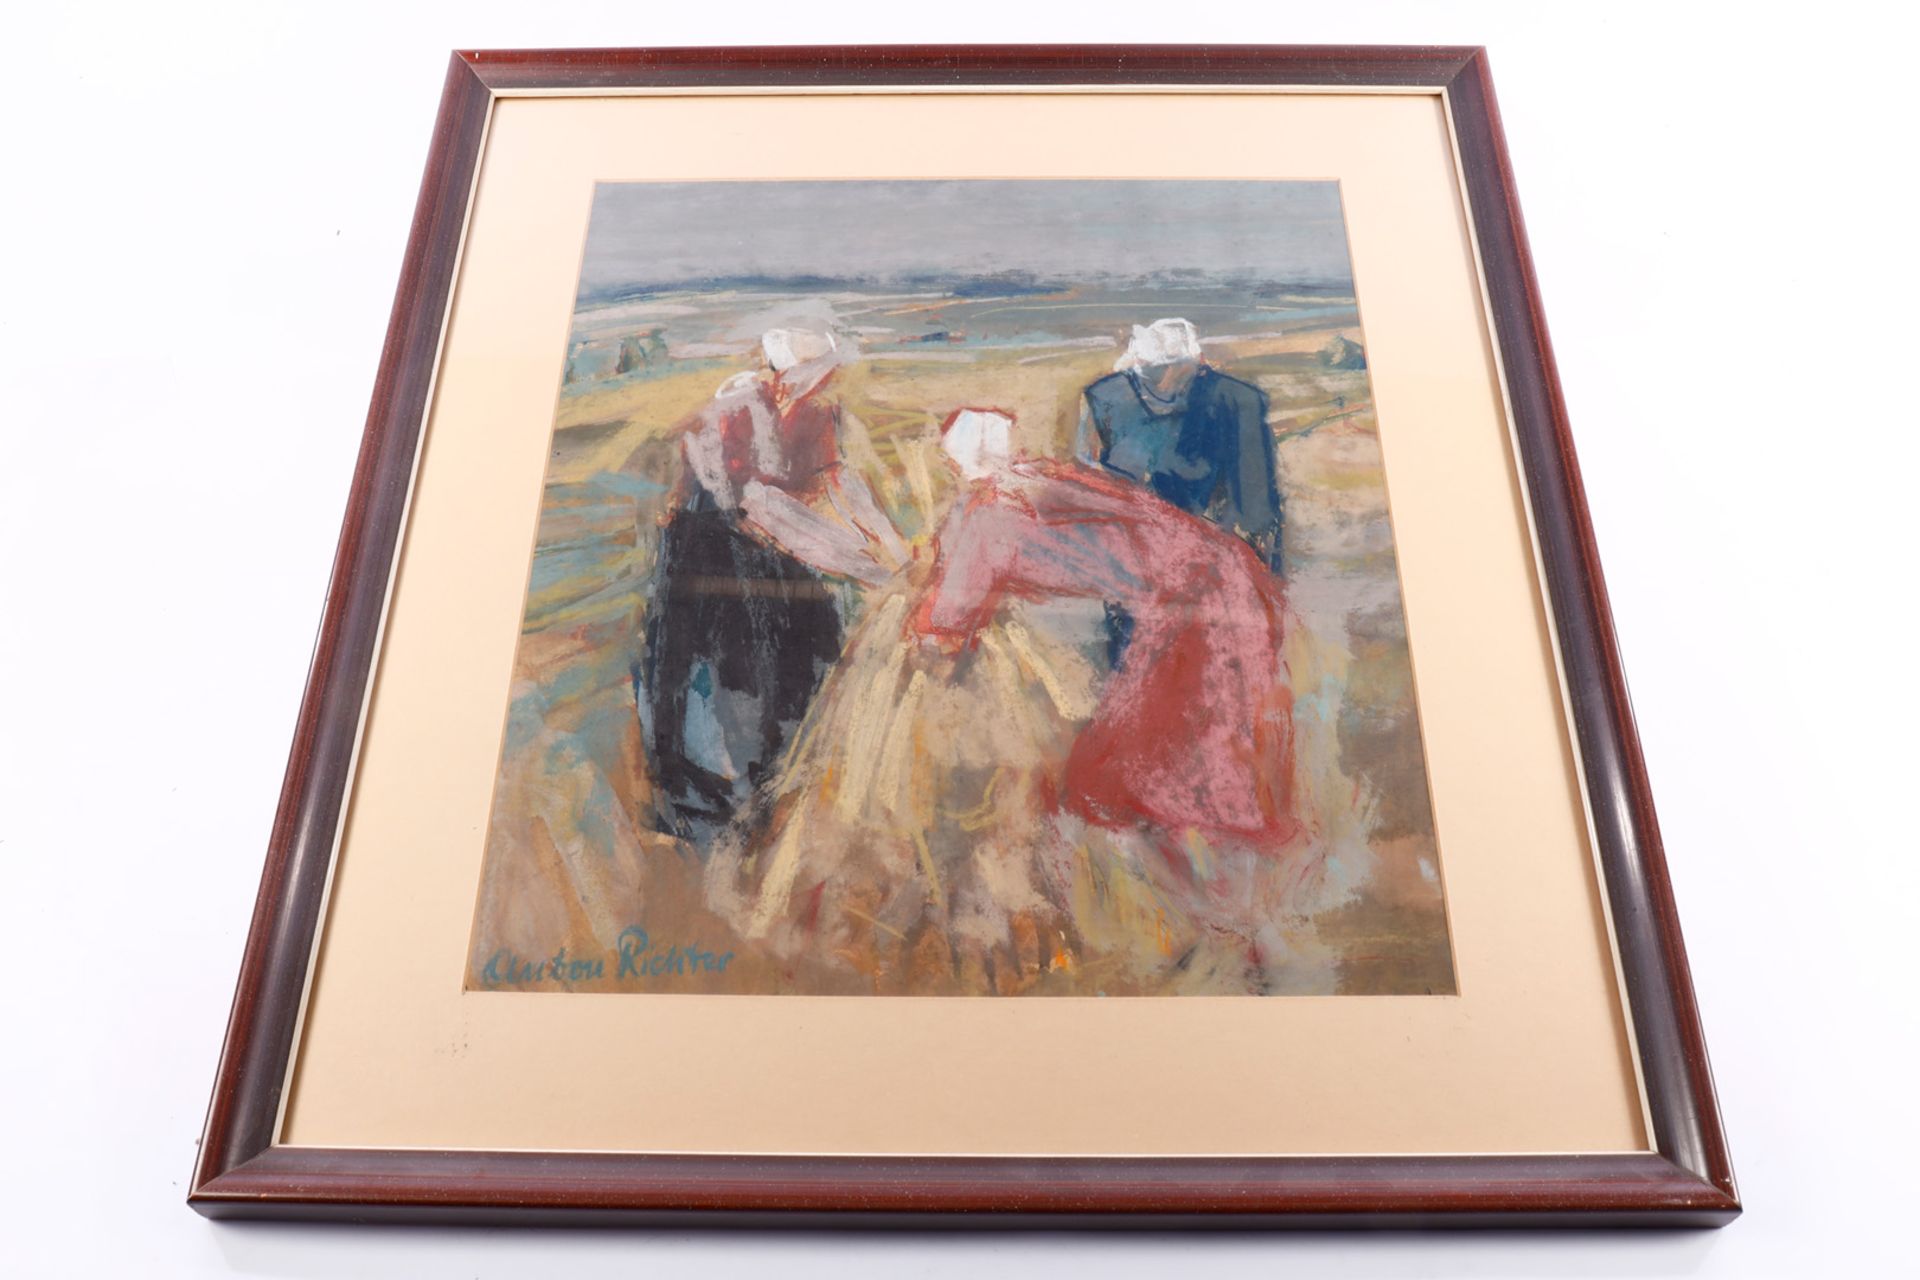 Anton Richter (1900-1962), ”Auf dem Feld”, Pastell, signiert, gerahmt, Gesamtmaße 62 x 56,5 cm